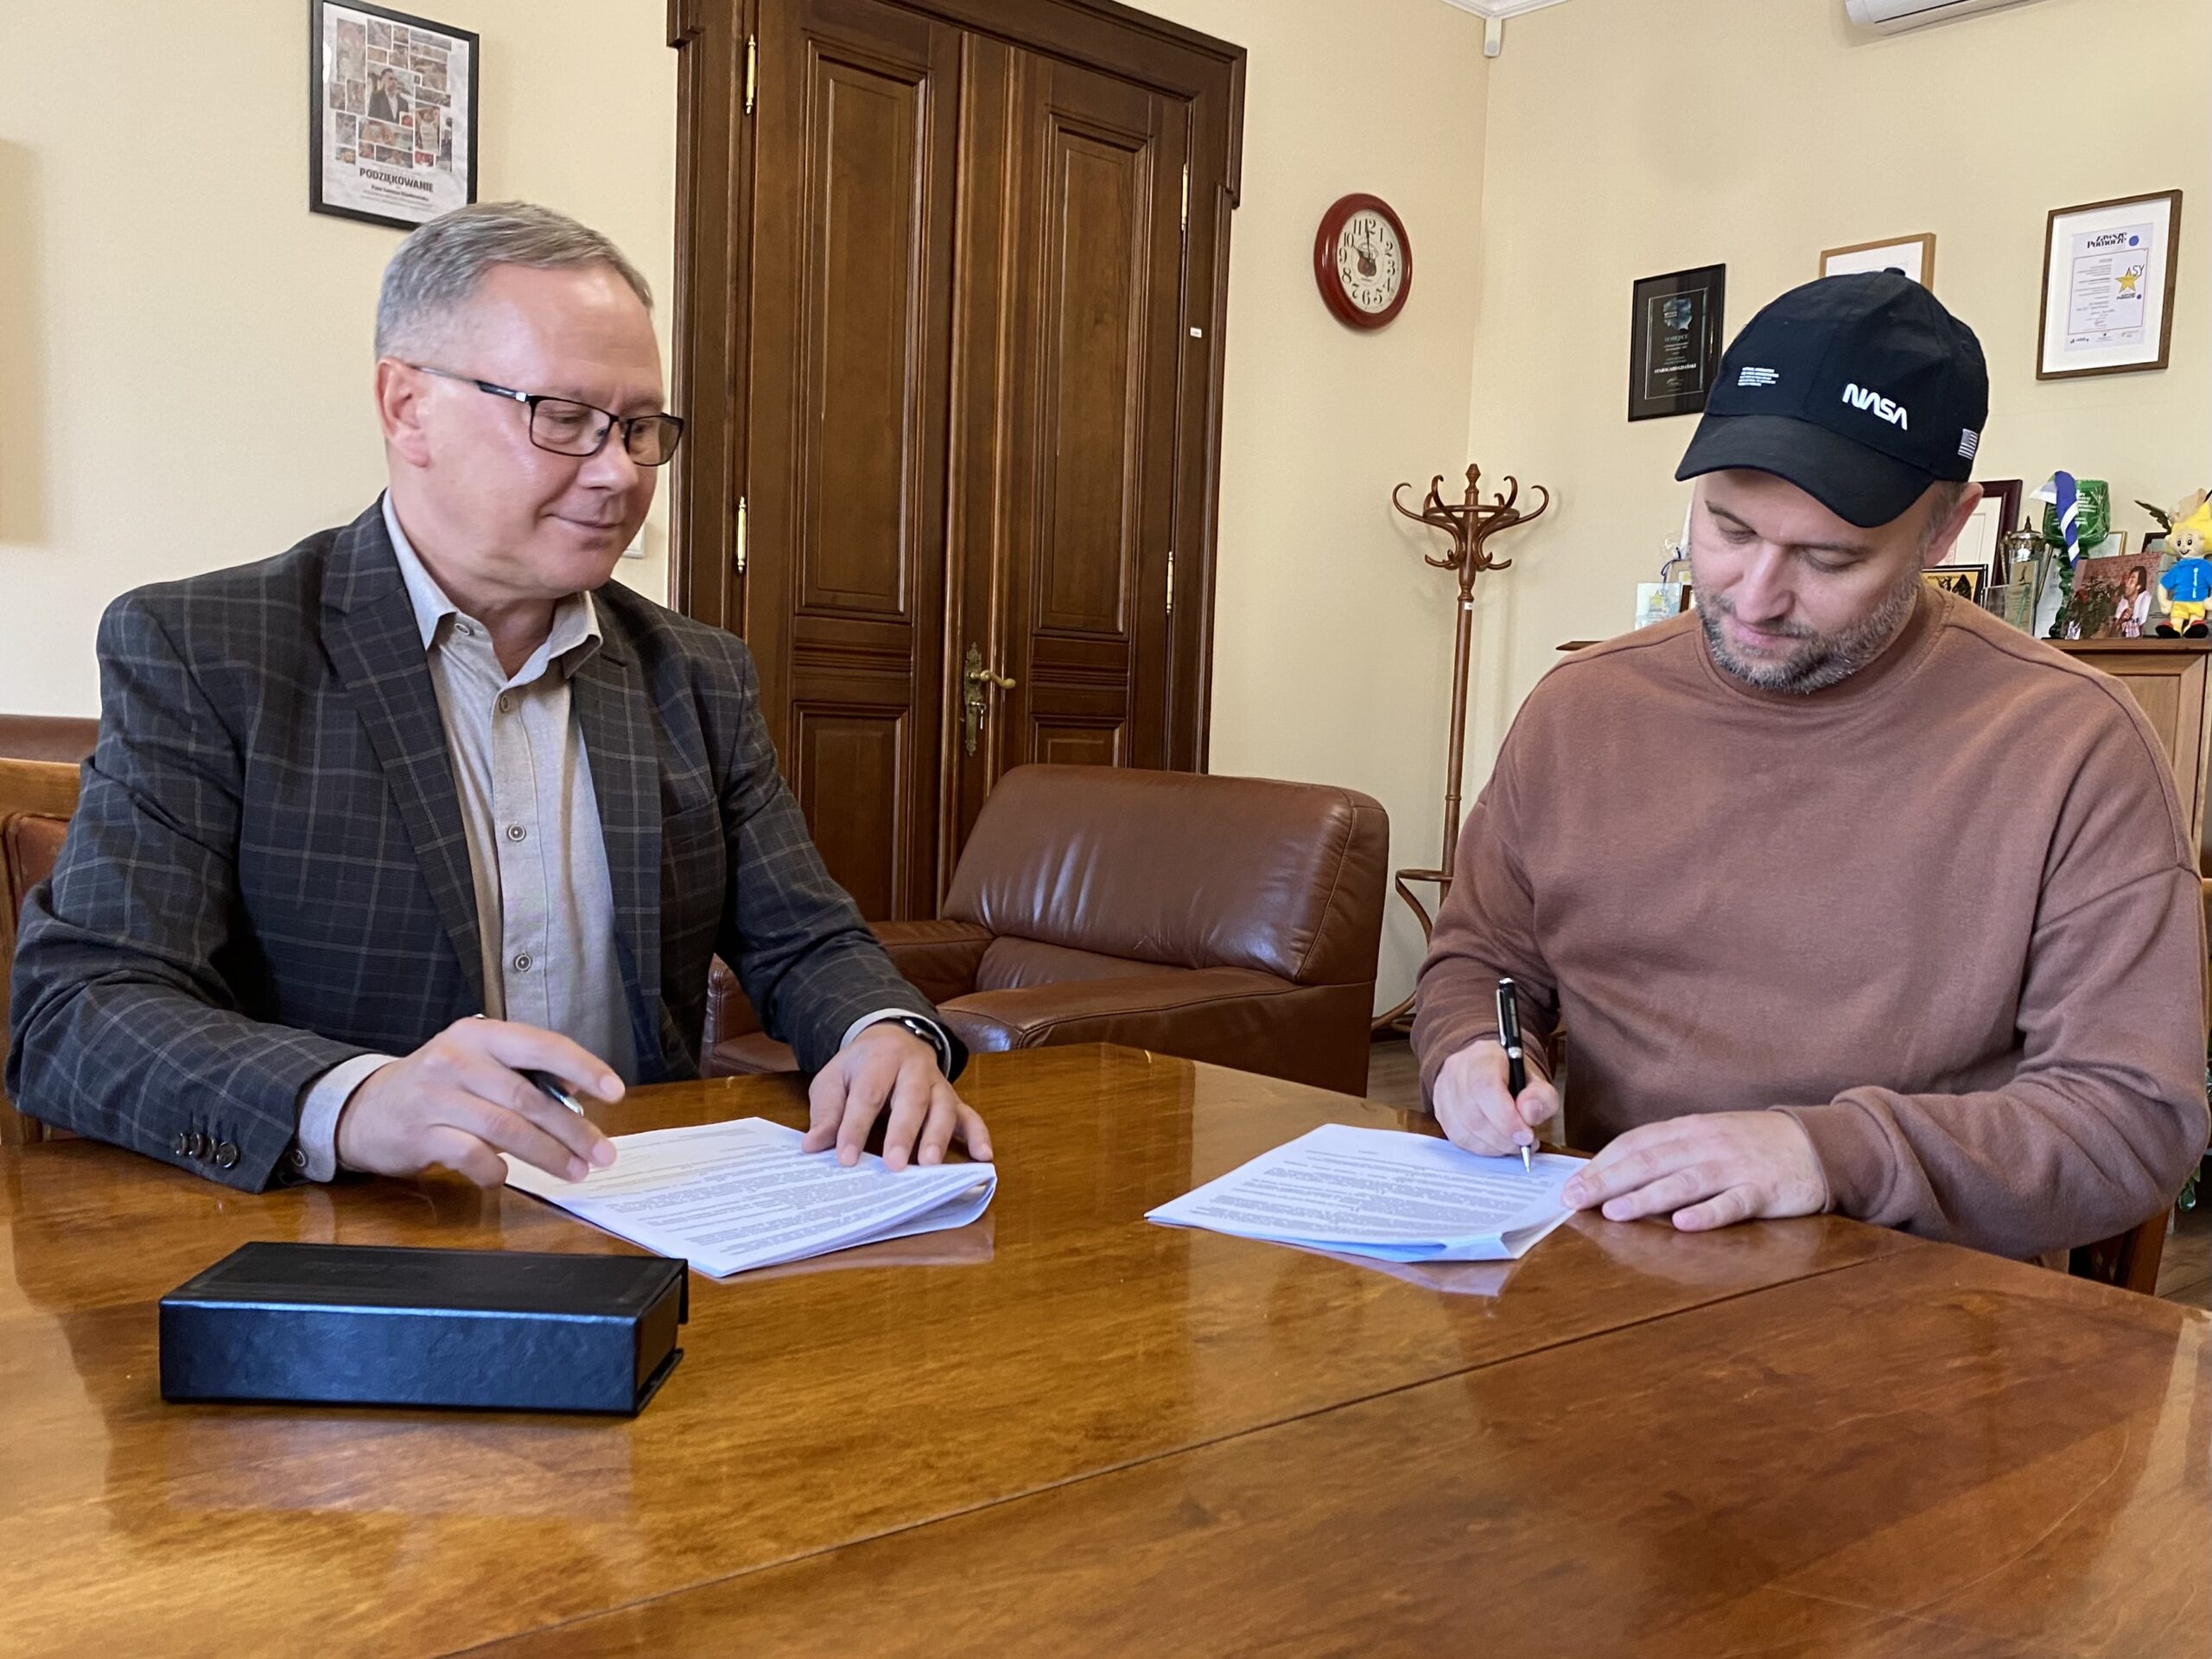 Podpisanie umowy z prezydentem miasta w gabinecie.